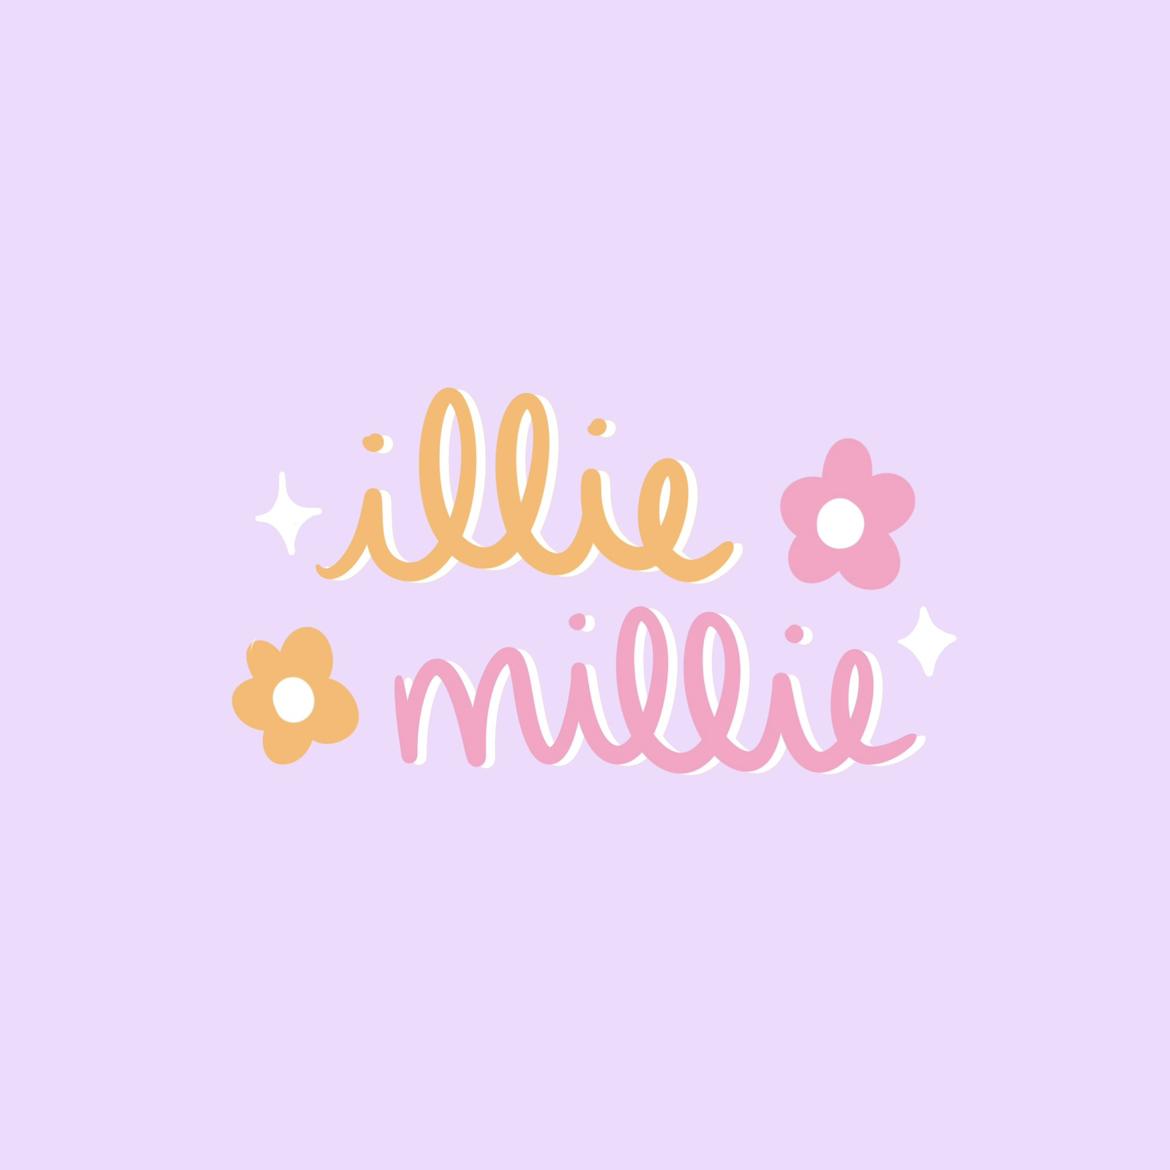 Illie Millie